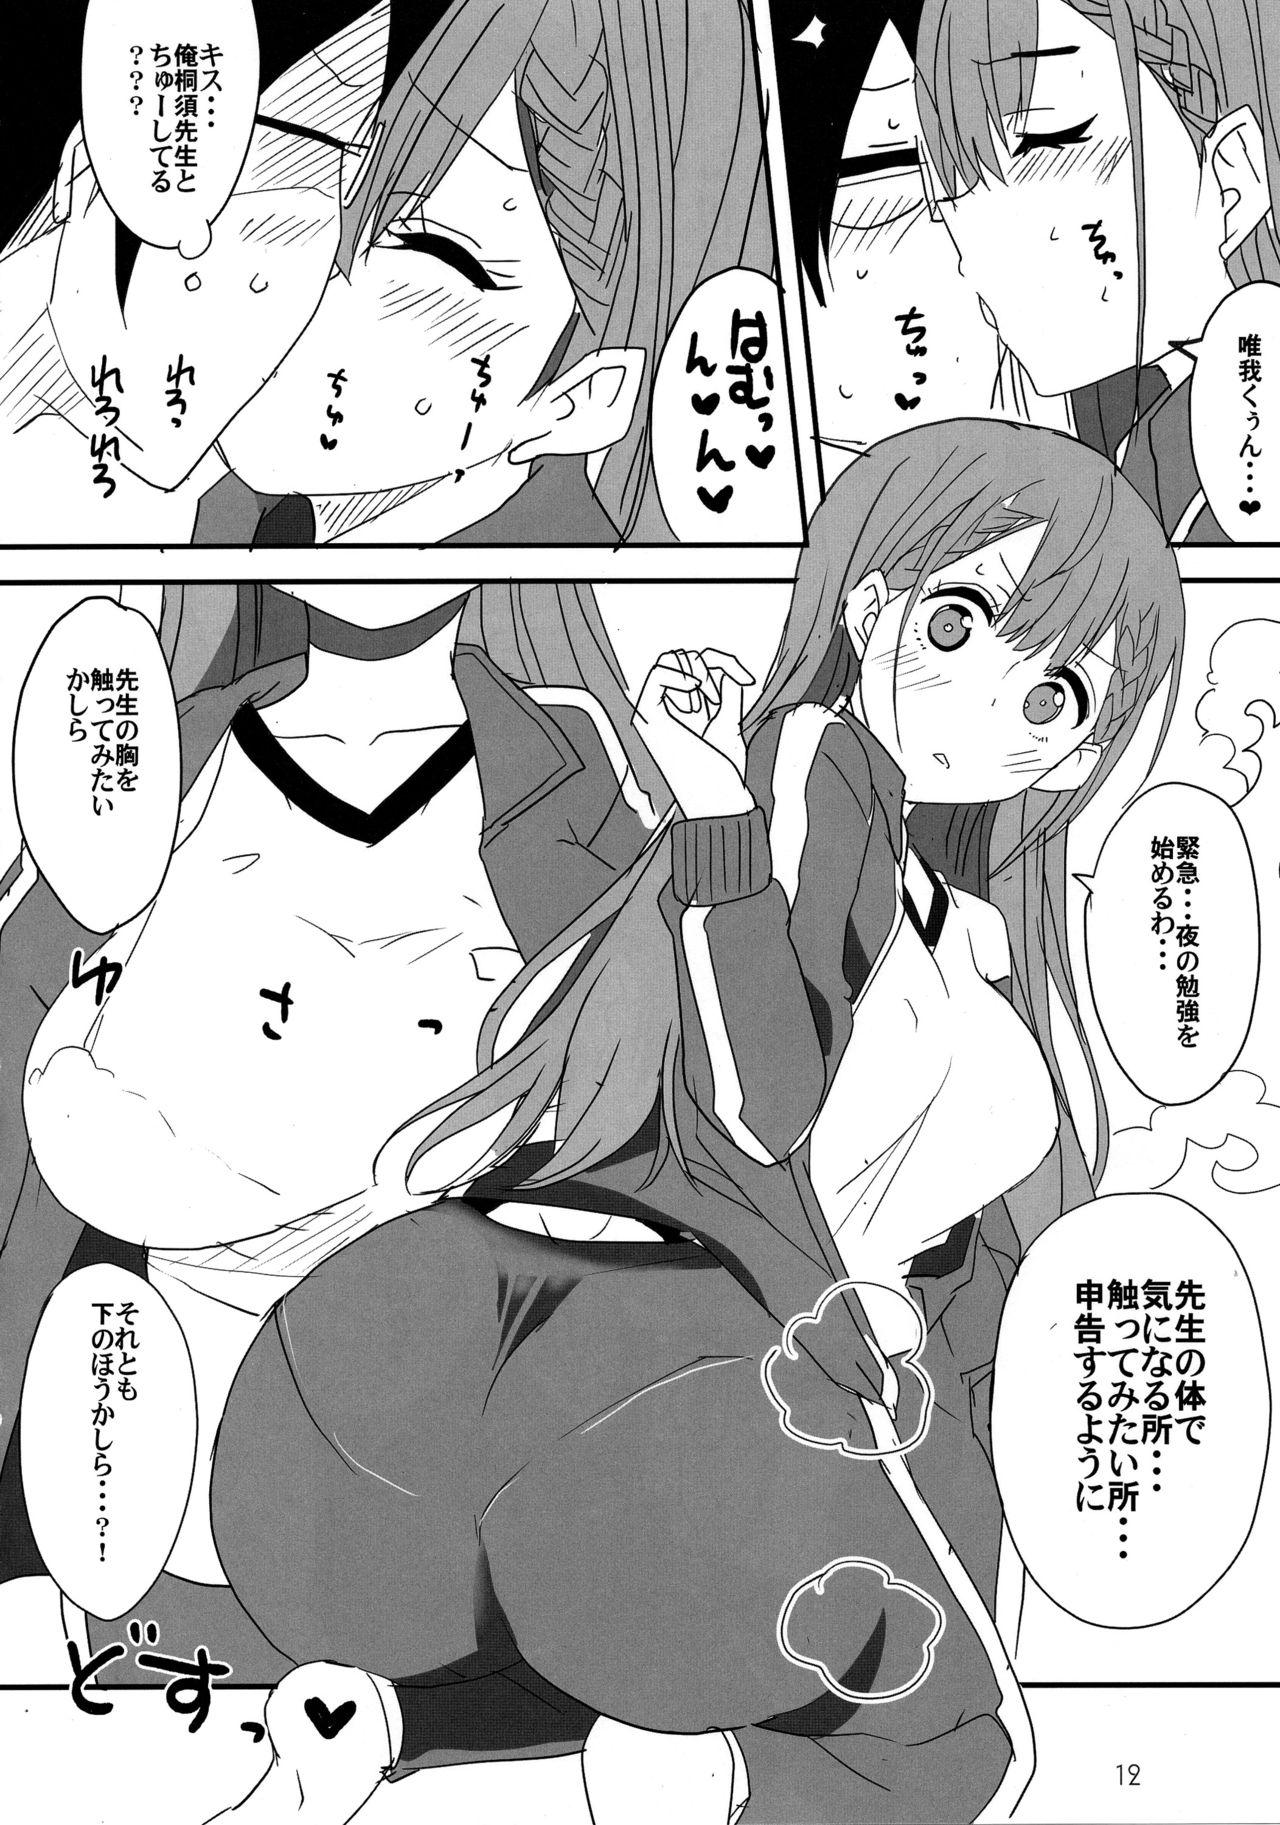 Topless Bokutachi wa Yoru no Benkyou ga Dekinai - Bokutachi wa benkyou ga dekinai All Natural - Page 9